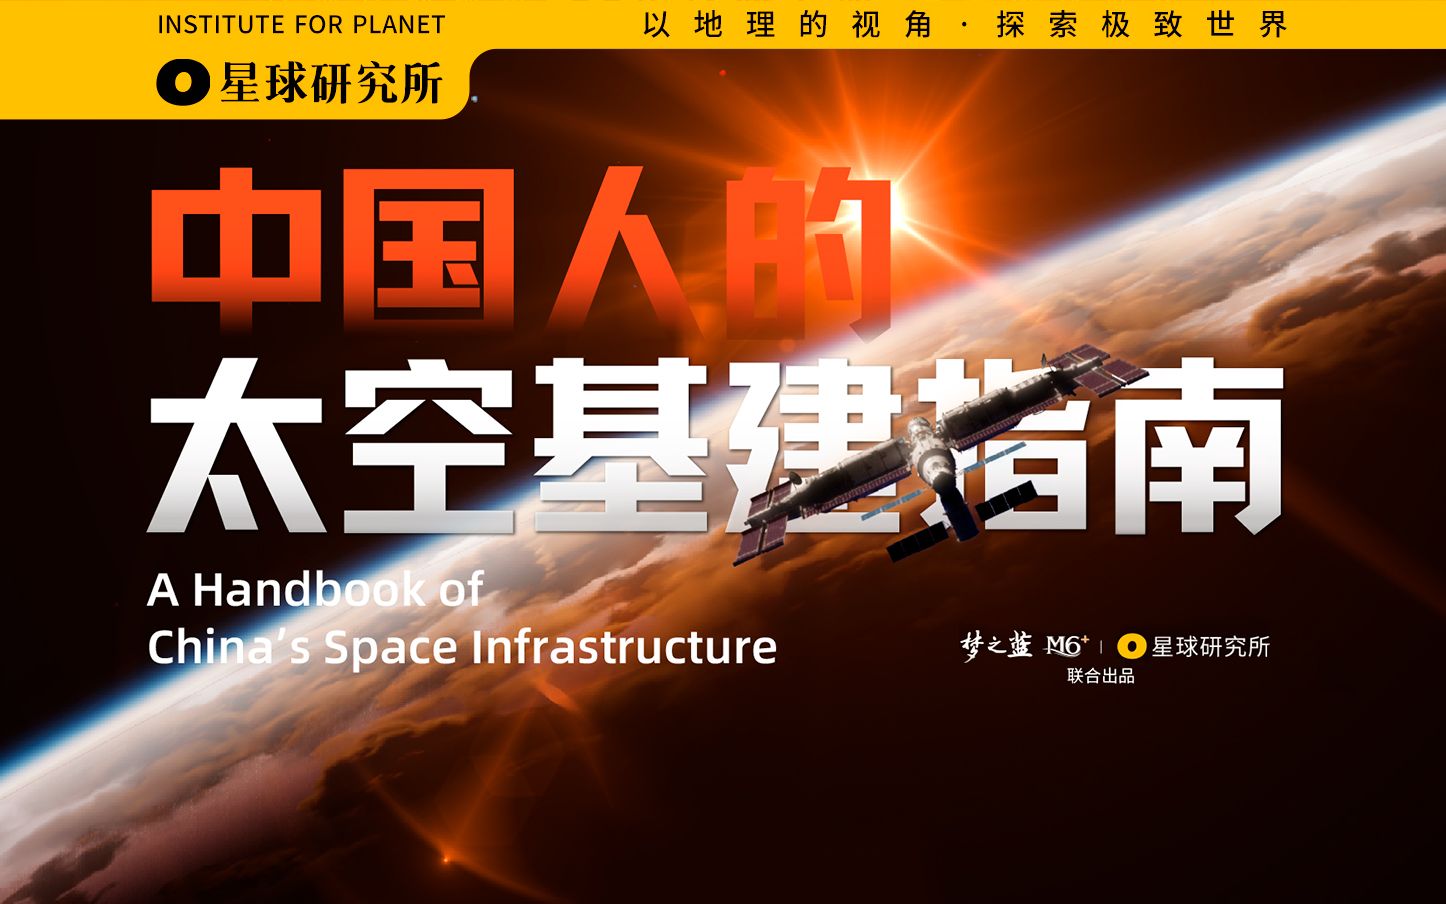 中国人，你是懂基建的。 2 周年了，聊聊中国空间站到底是如何建成的？